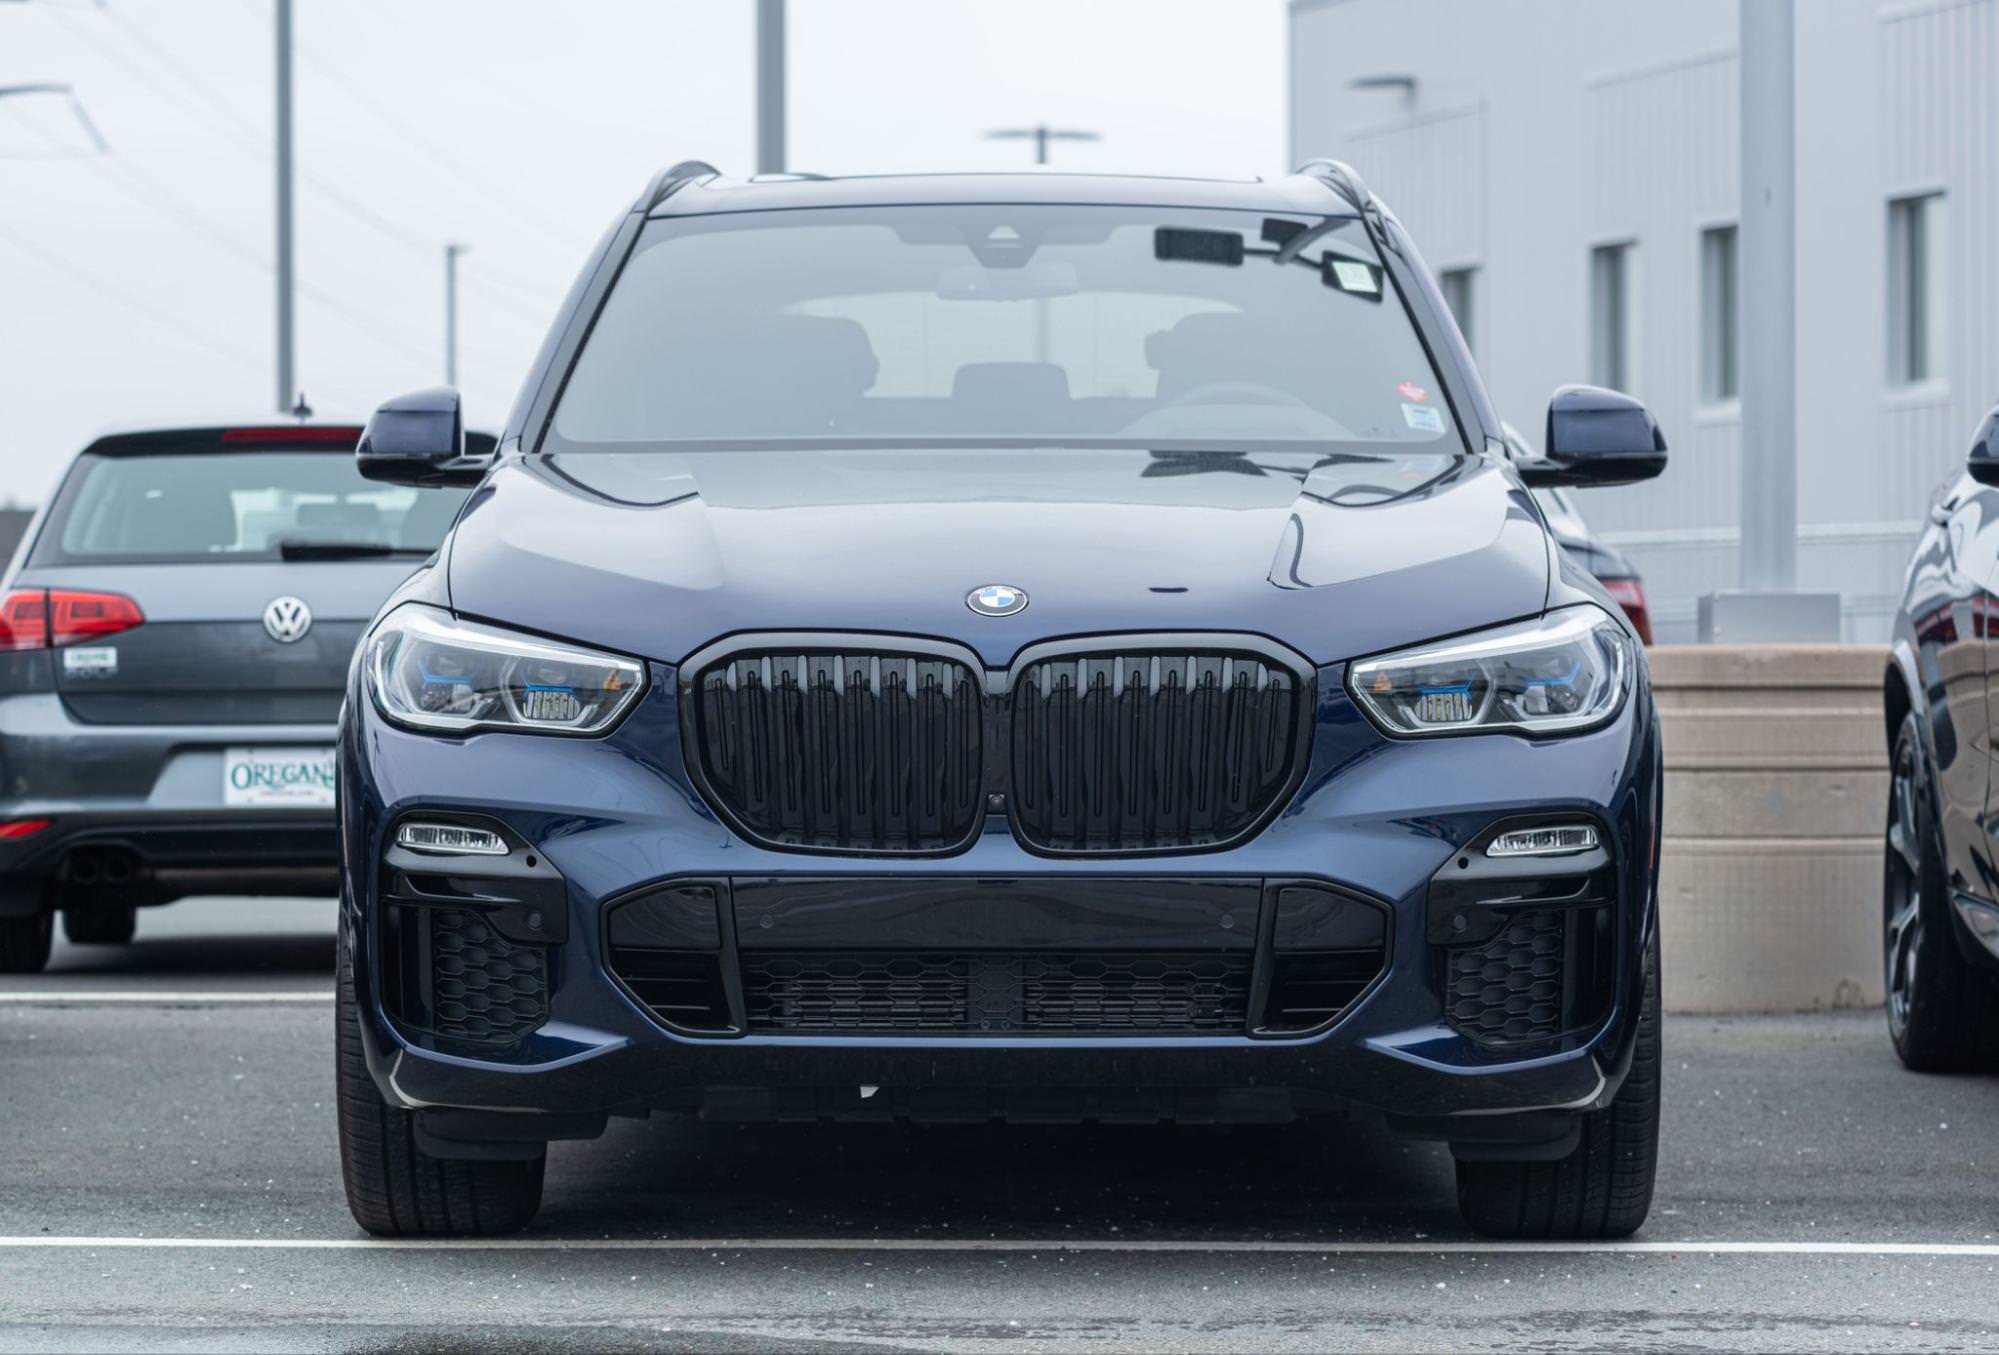 Tento obrázek zobrazuje čelní pohled na SUV BMW X5. Vozidlo je tmavě modré nebo černé a je zobrazeno na místě, které vypadá jako parkoviště. Obrázek se zaměřuje na přední část vozu a zvýrazňuje jeho velkou ledvinovou mřížku chladiče.